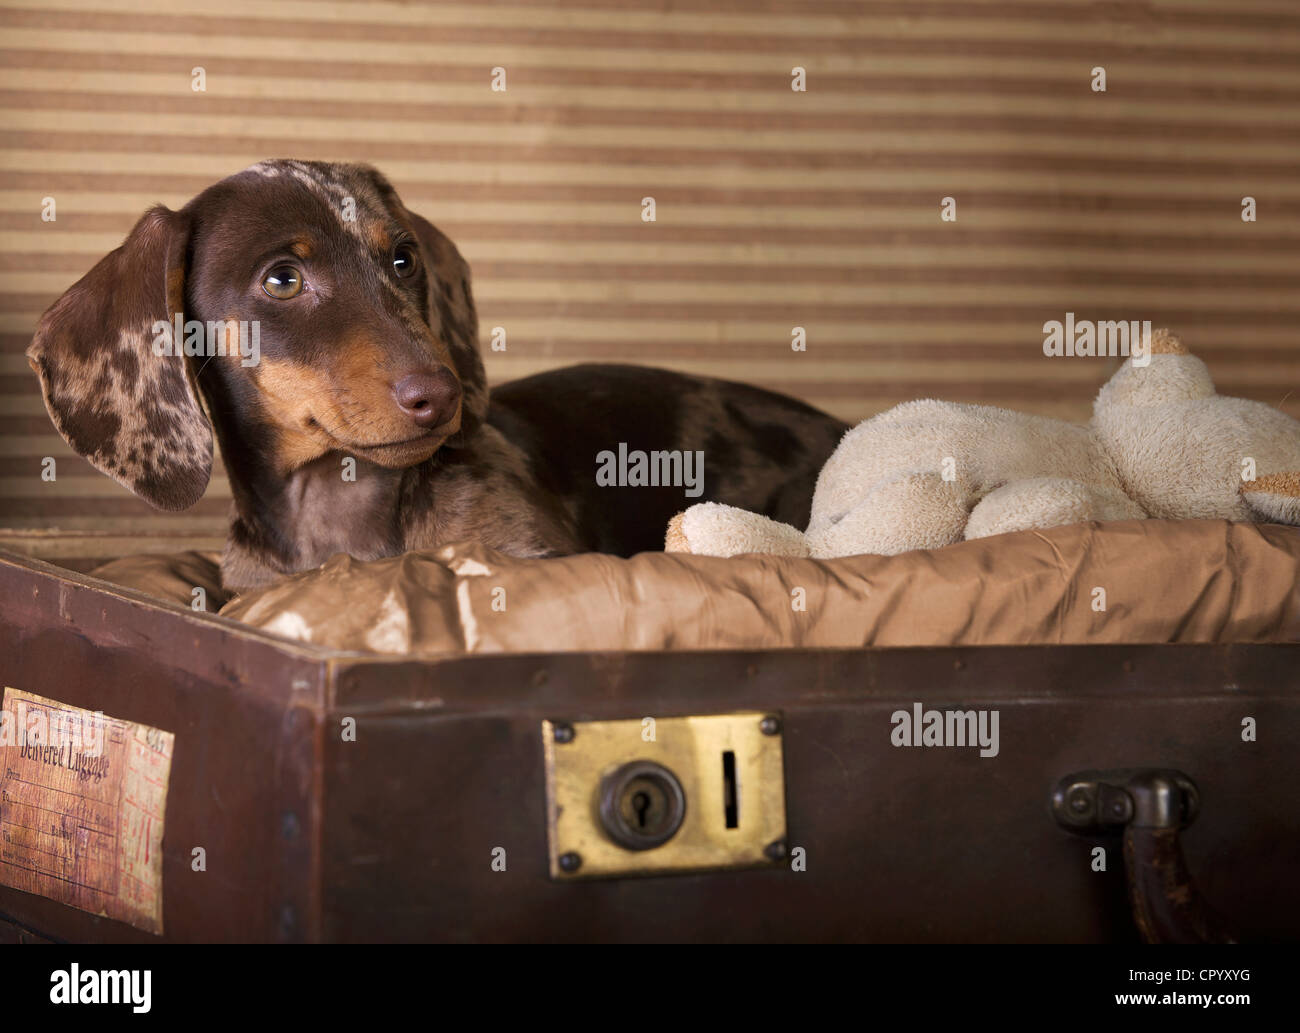 Pezzati a pelo corto bassotto cucciolo seduto in una valigia con un piccolo orsacchiotto Foto Stock